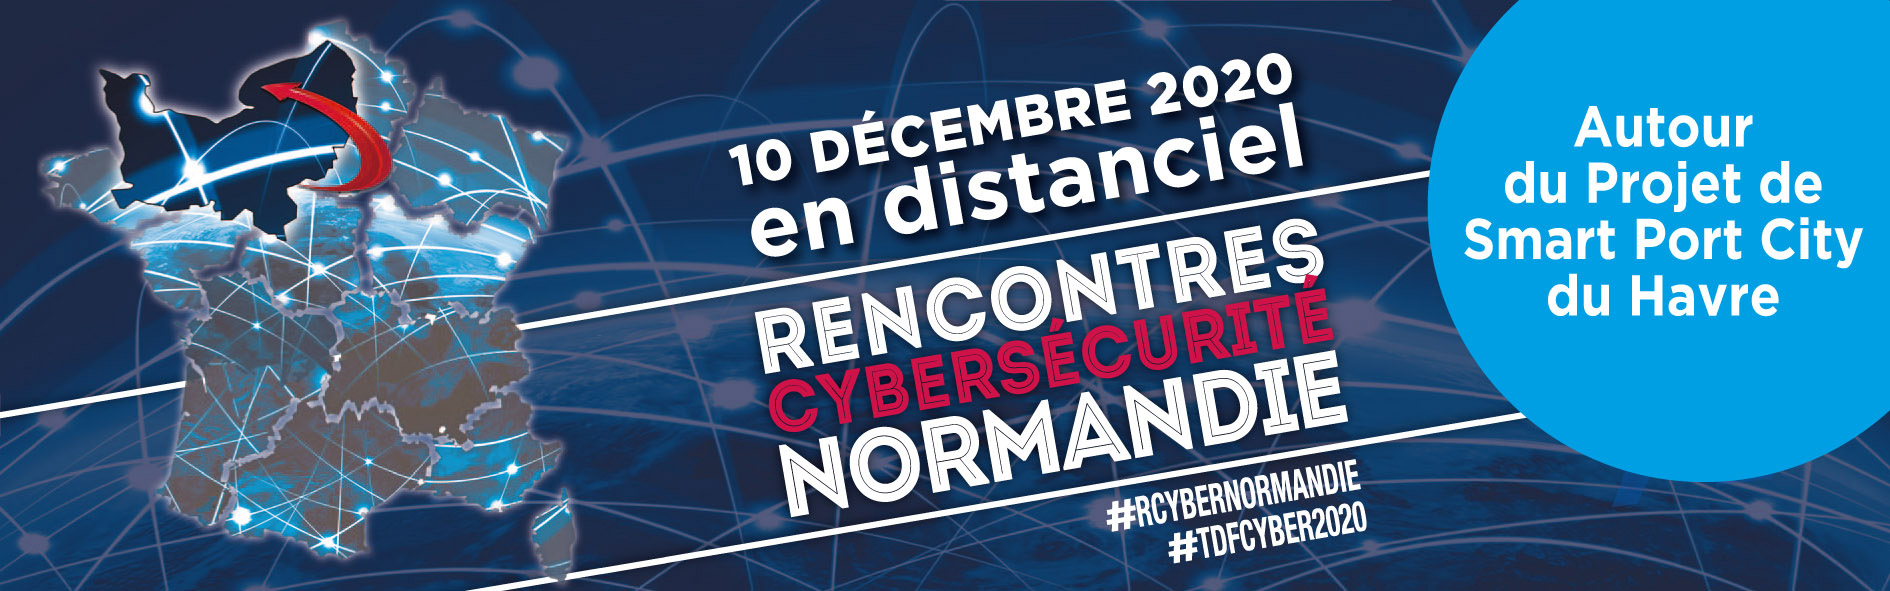 RCyber Normandie, les rencontres de la cybersécurité par Cybercercle